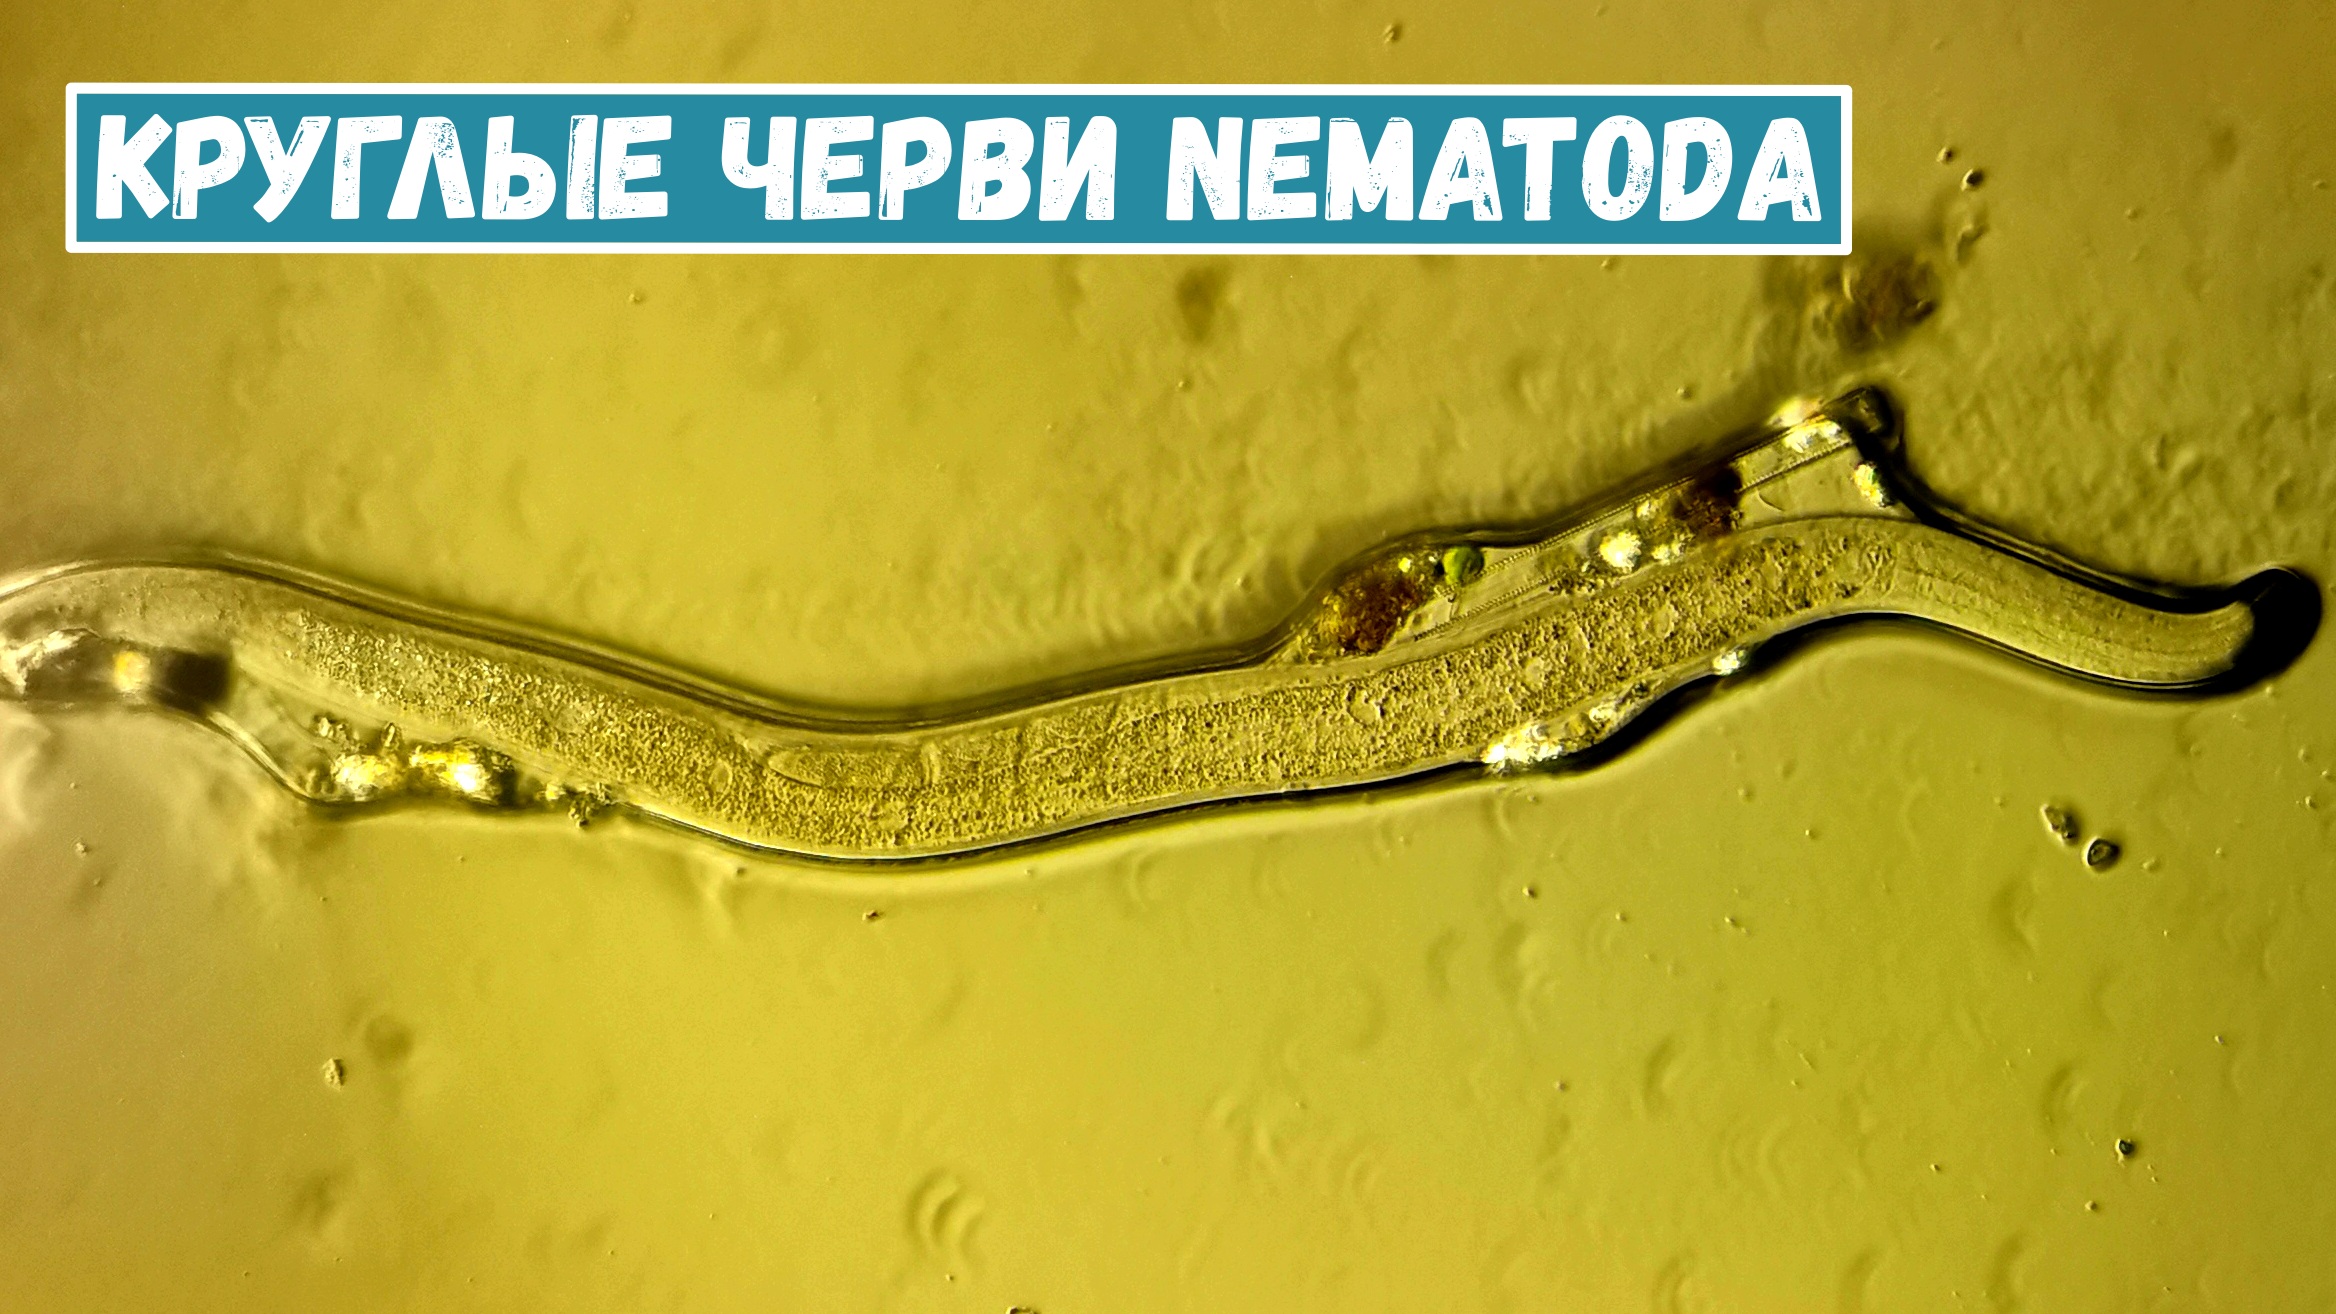 Черви Nematoda, найденные в кусочке мха